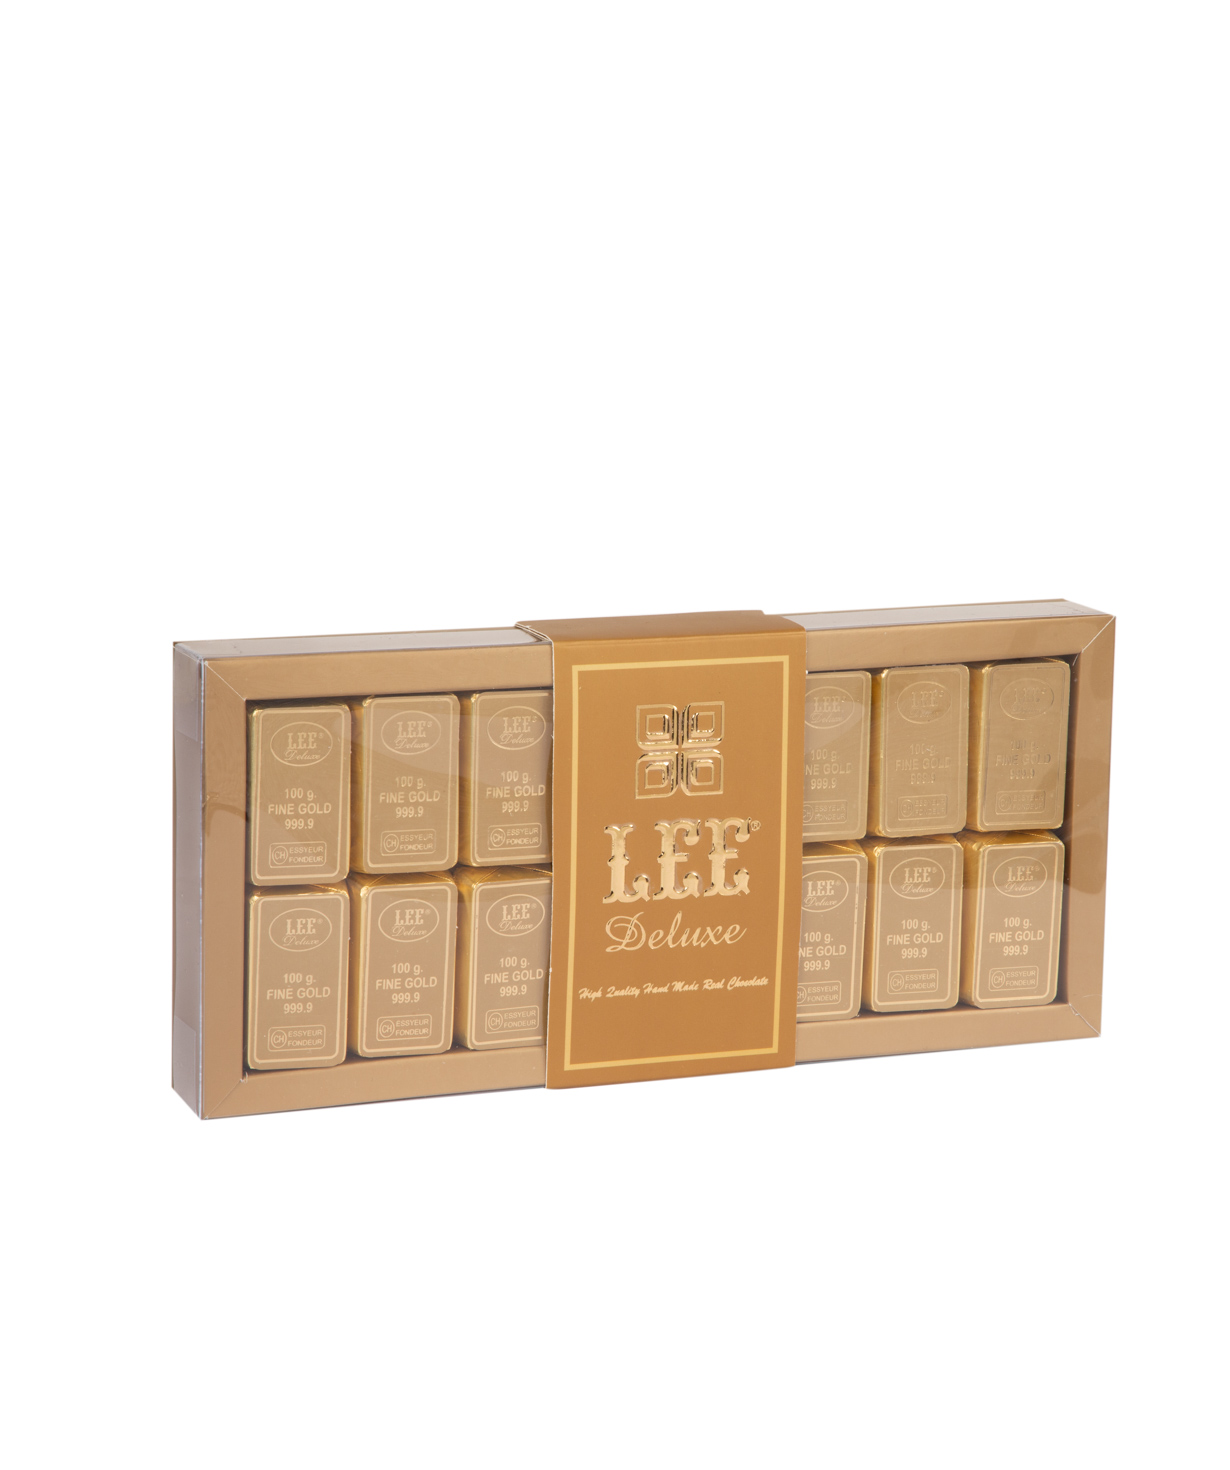 Коллекция `Lee Ounce Gold` шоколадных конфет 295 гр